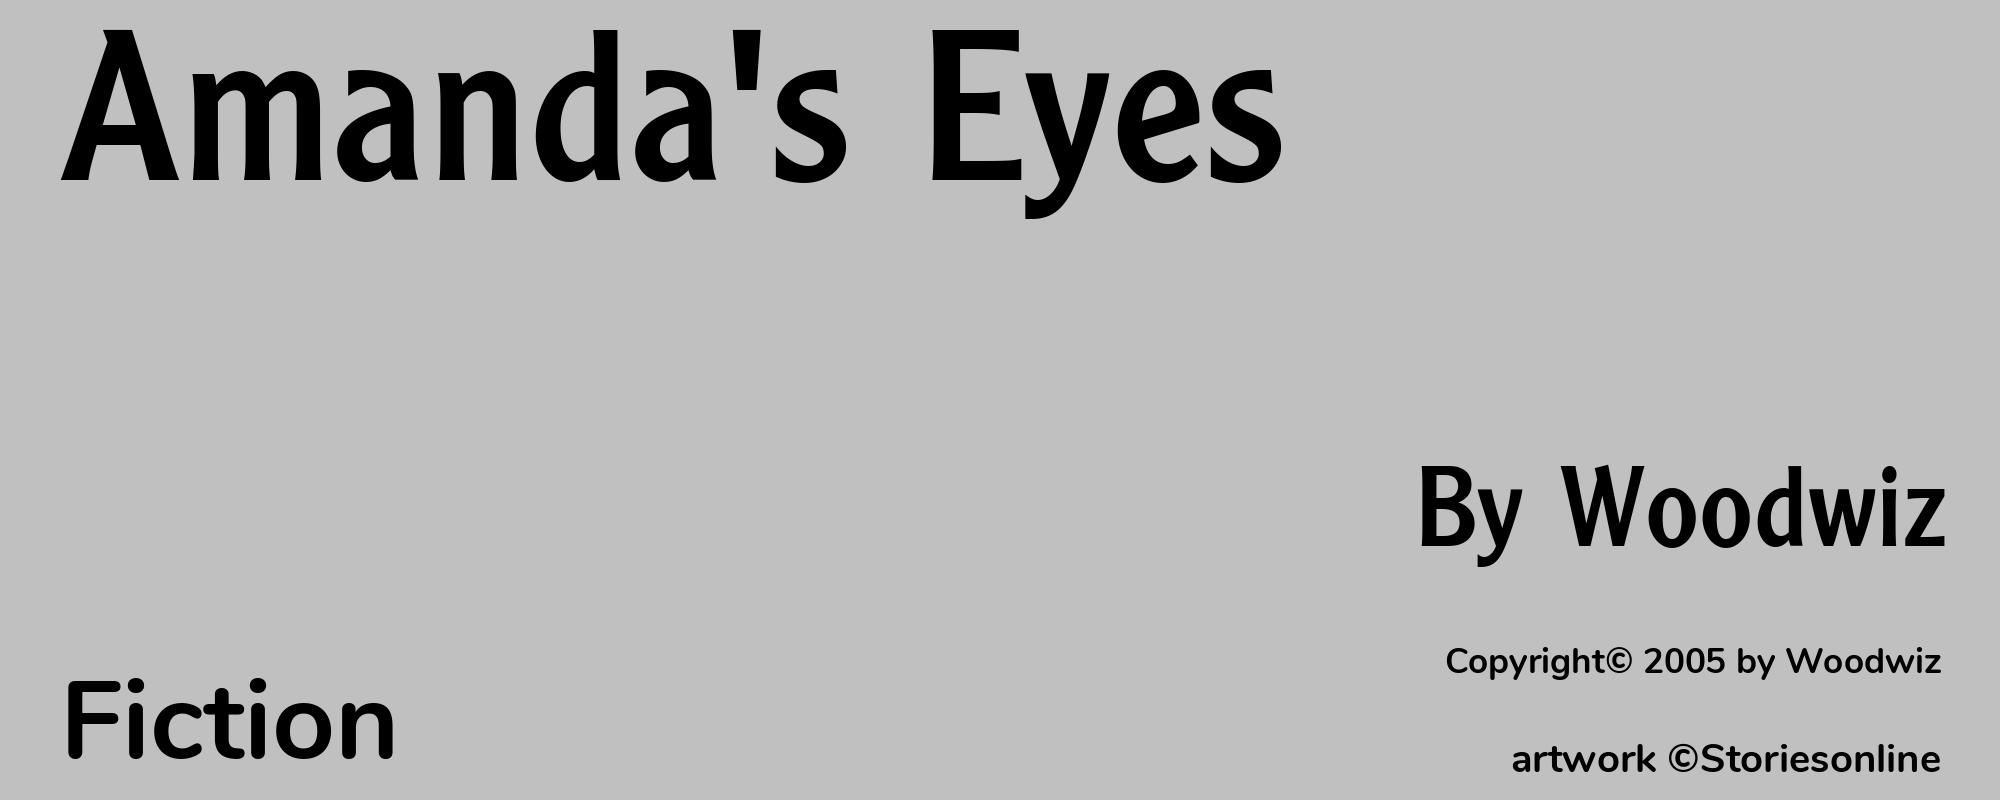 Amanda's Eyes - Cover